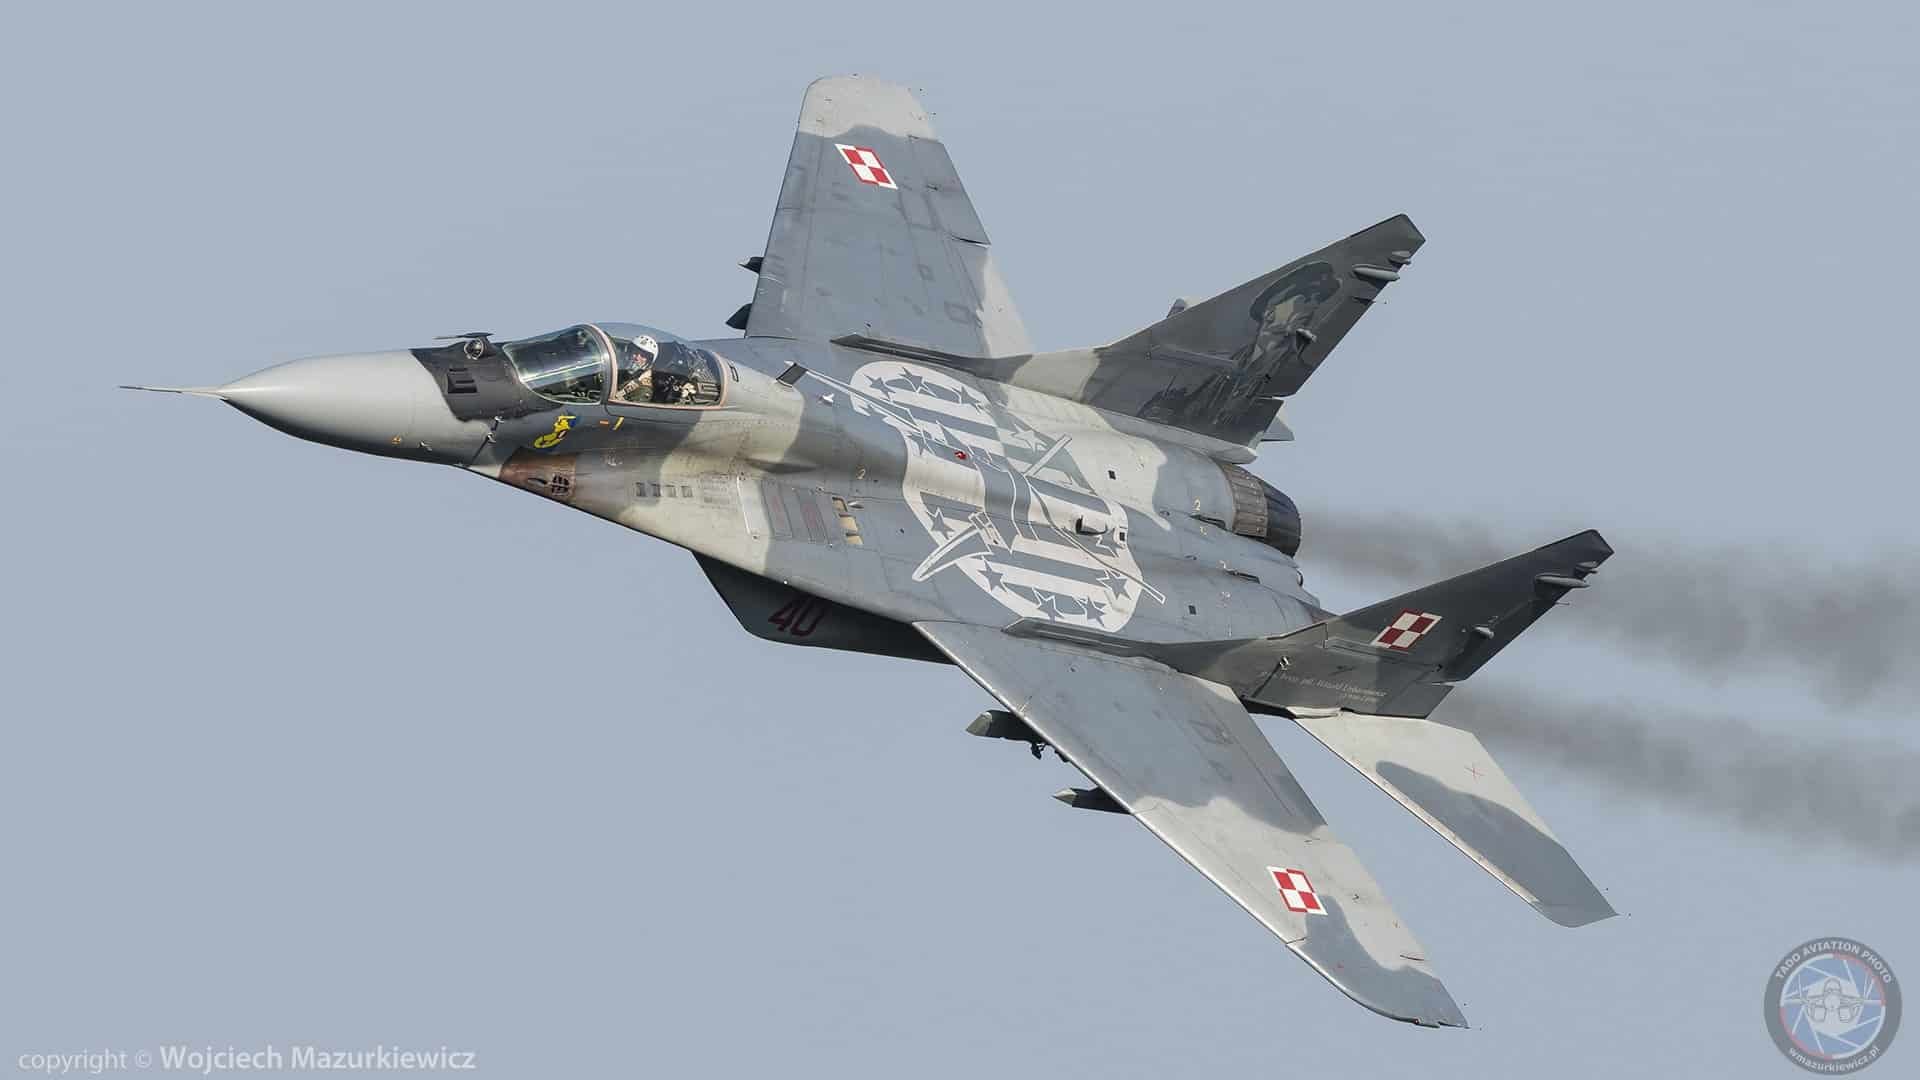 Польща відправить в Україну 4 винищувачі МіГ-29 — Дуда